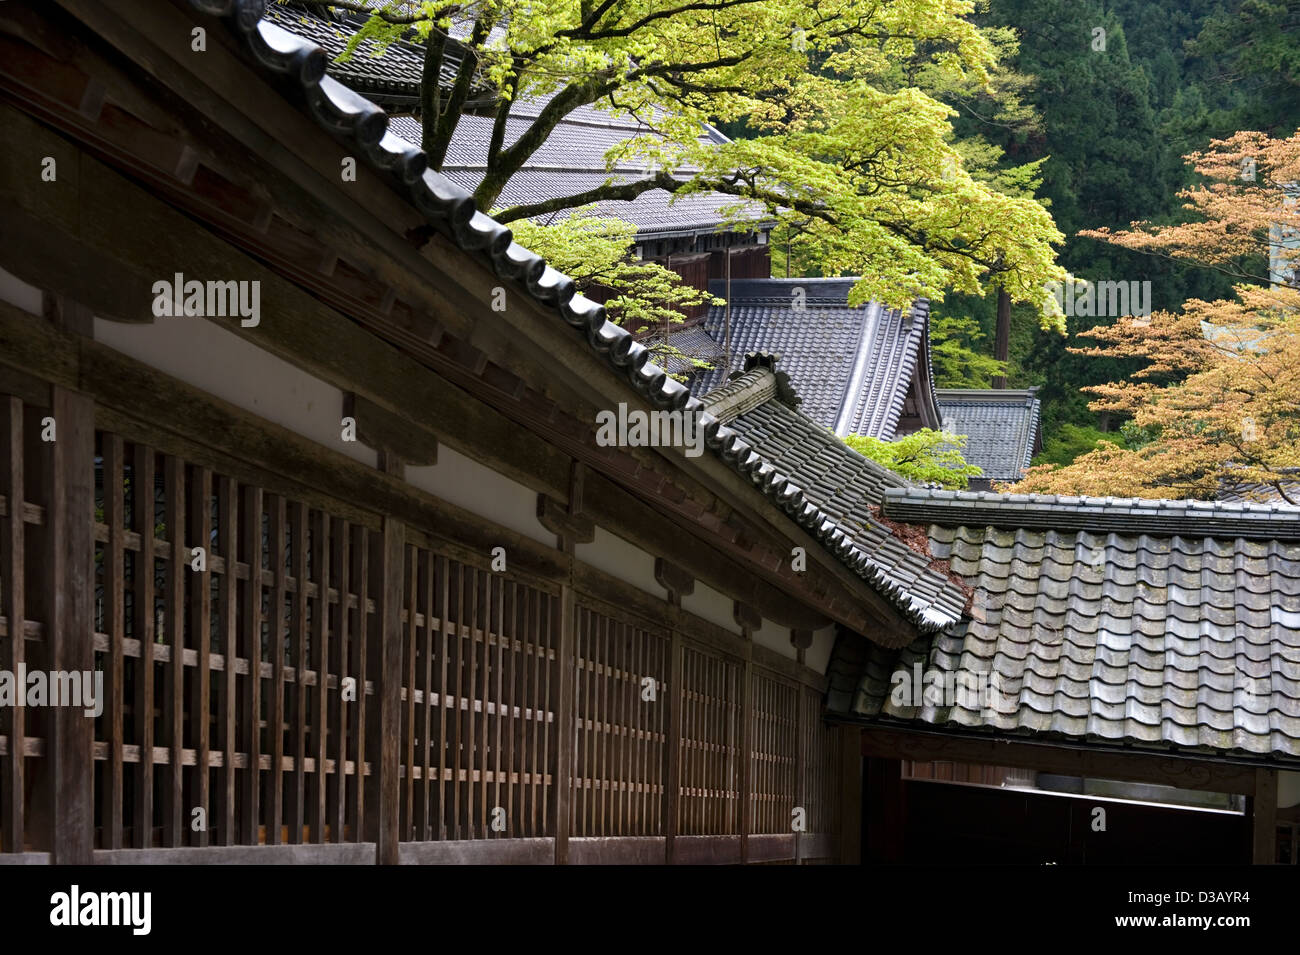 Historische Gebäude und die natürliche Berglandschaft Wald koexistieren friedlich in der Soto-Sekte Zen-buddhistischen Eiheiji Tempel Stockfoto